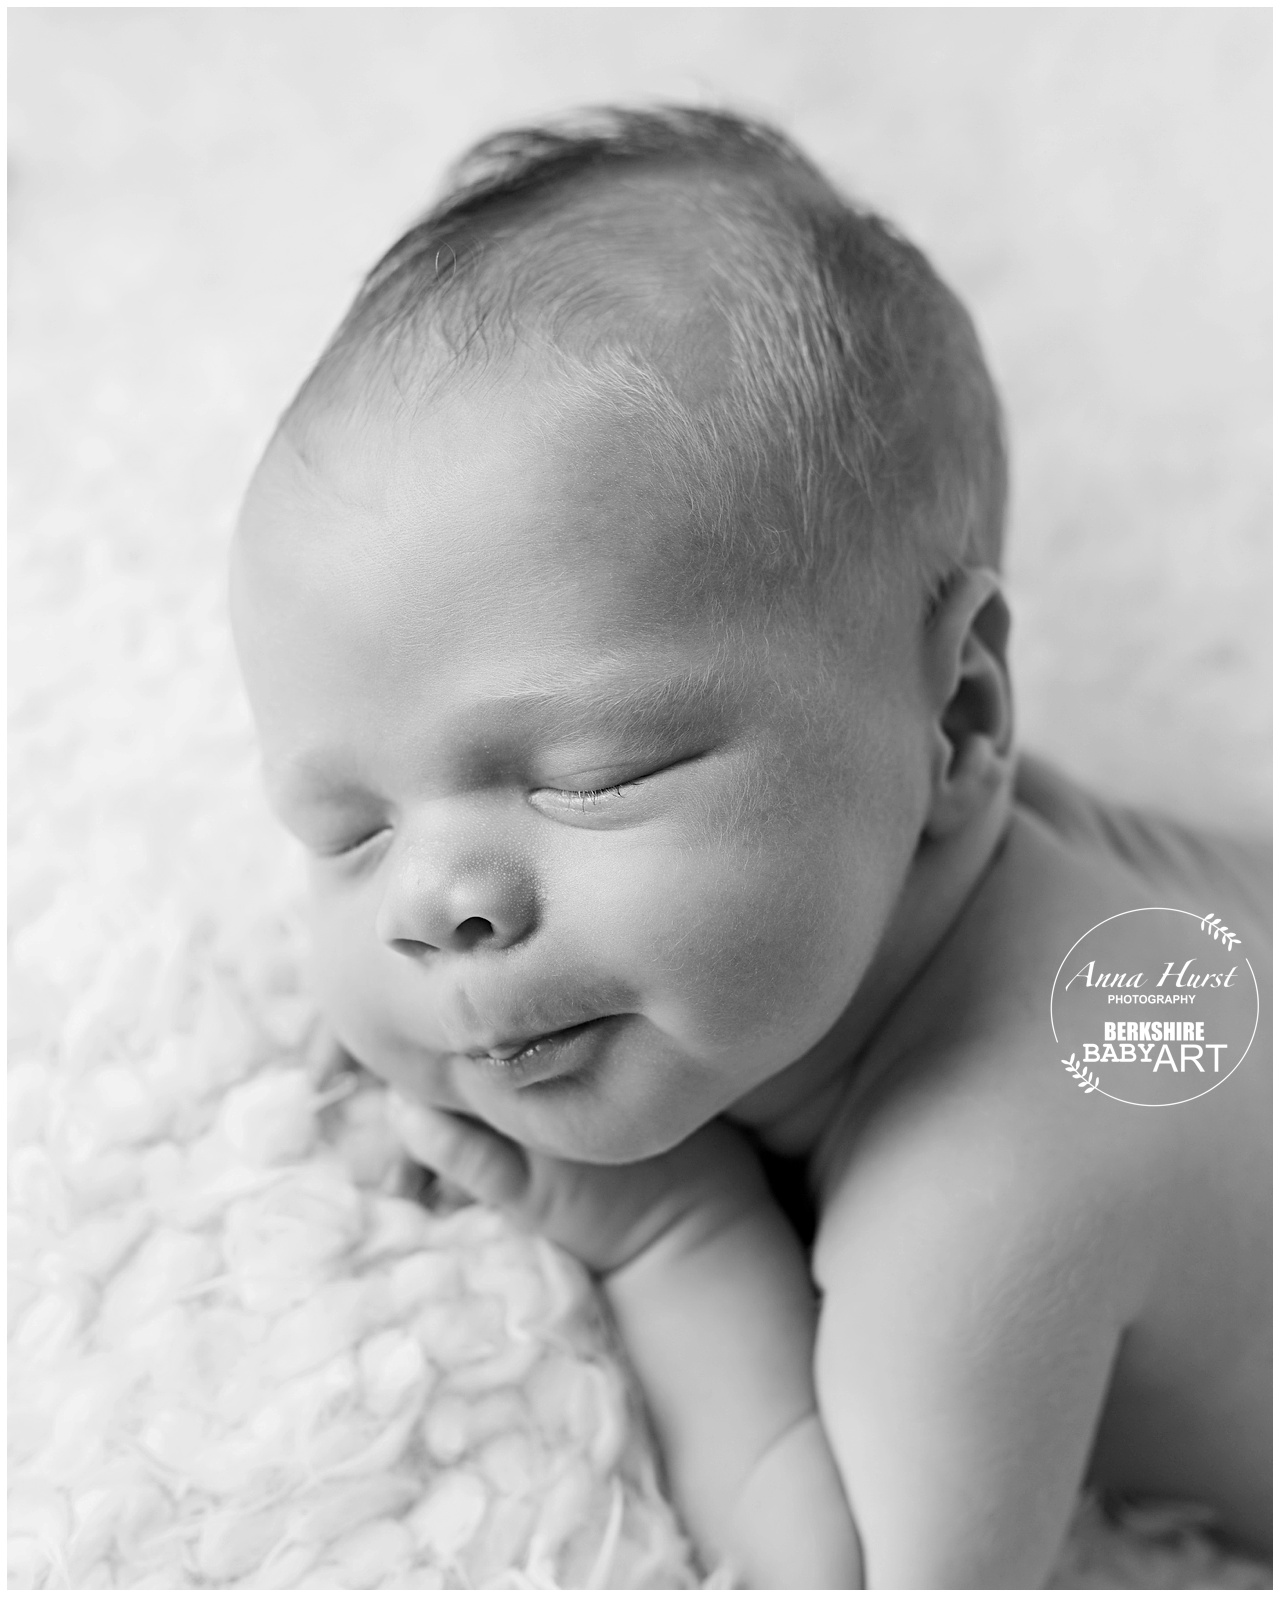 Newborn Baby Photographer Berkshire